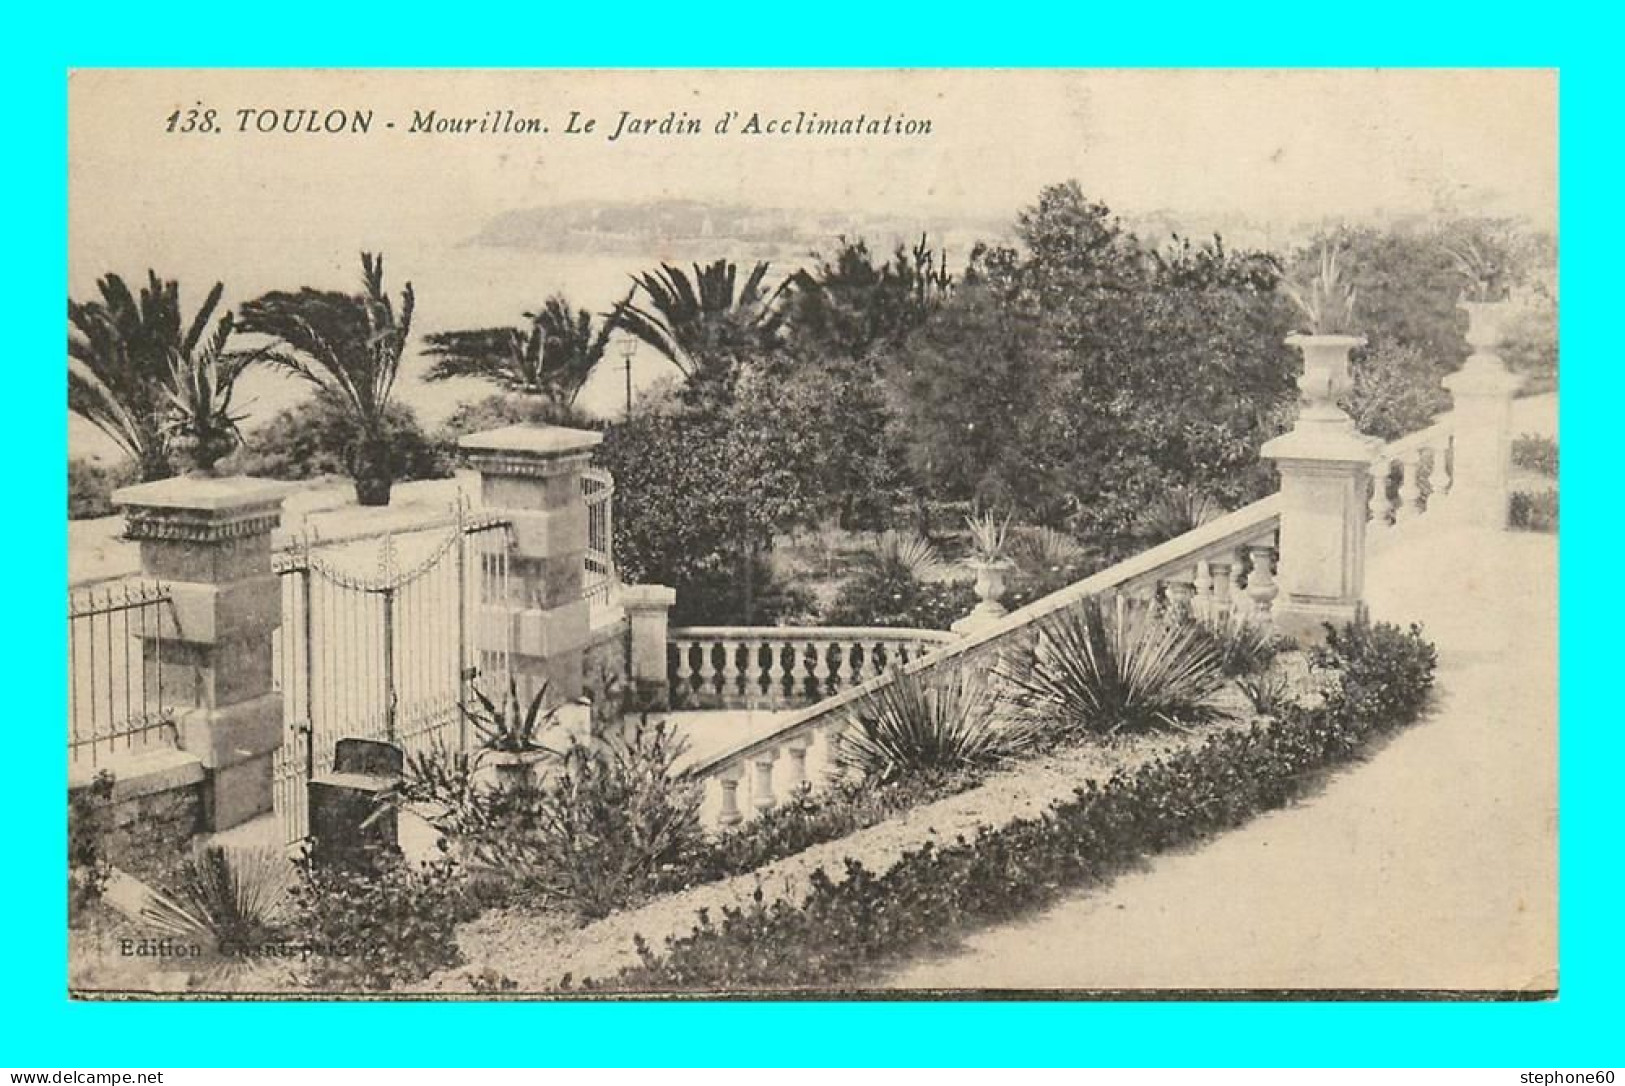 A892 / 409 83 - TOULON Mourillon Jardin D'Acclimatation - Toulon